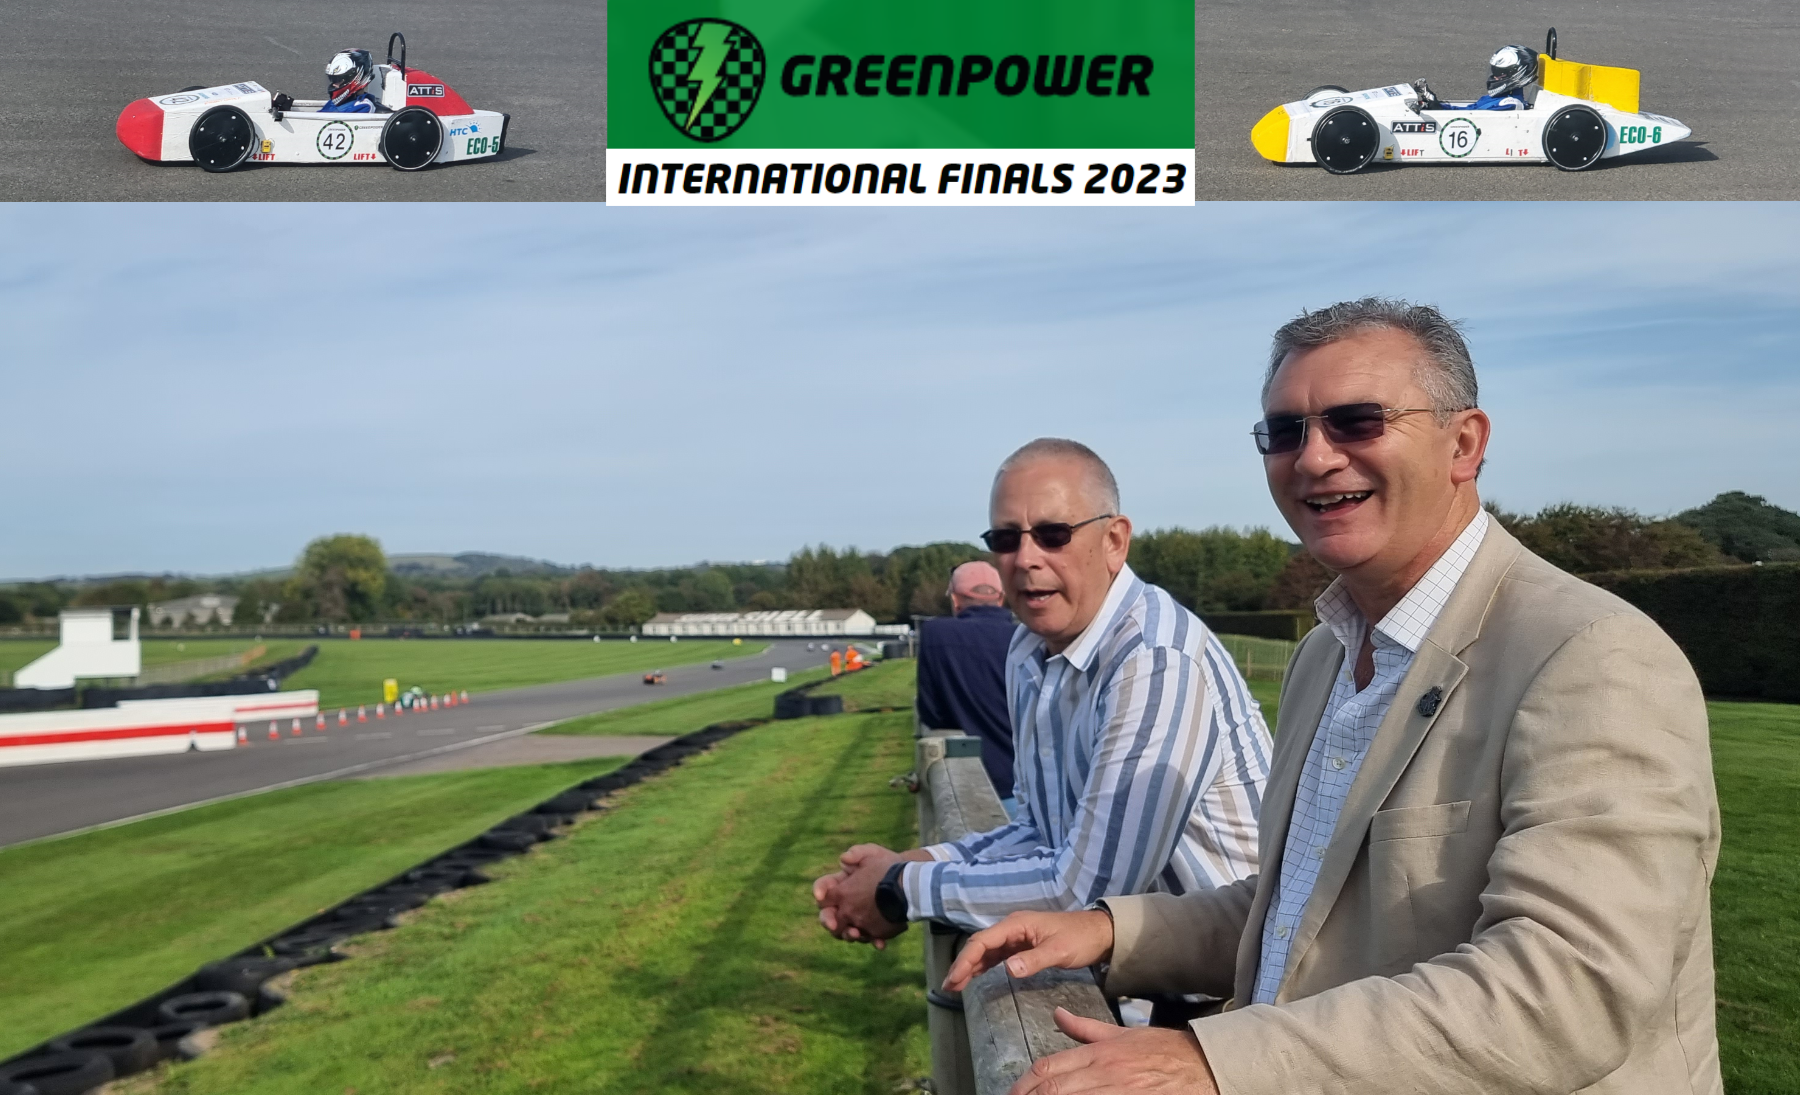 Greenpower International Finals 2023